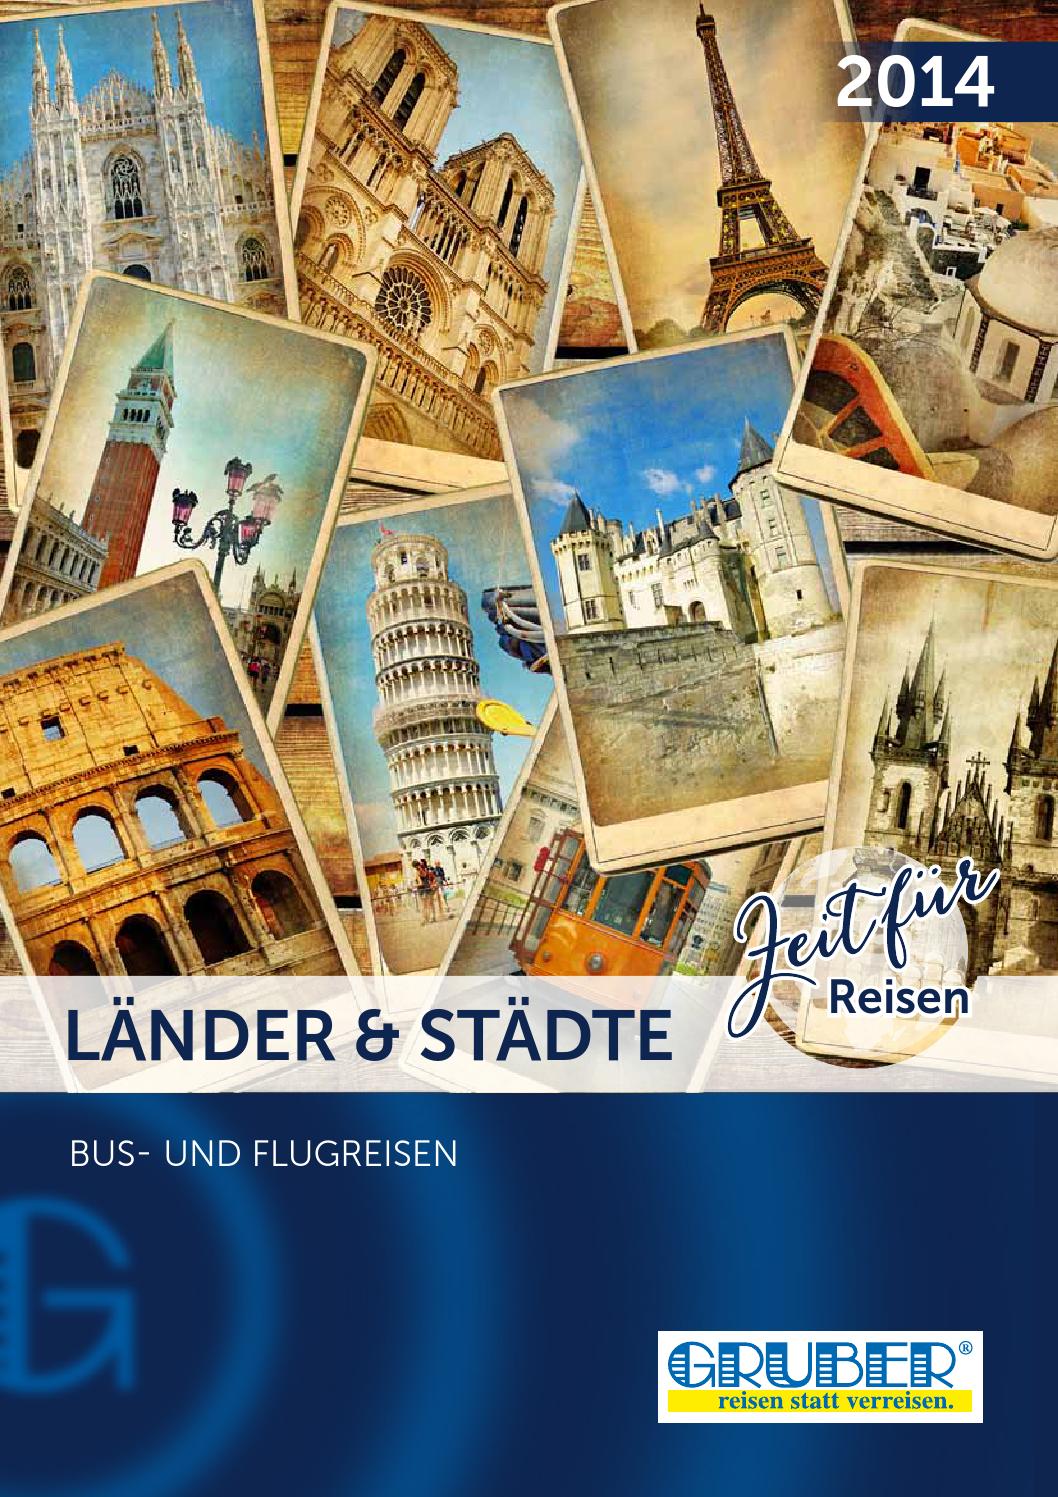 Gartenplaner Online Inspirierend Länder & Städte 2014 by Gruber Reisen issuu